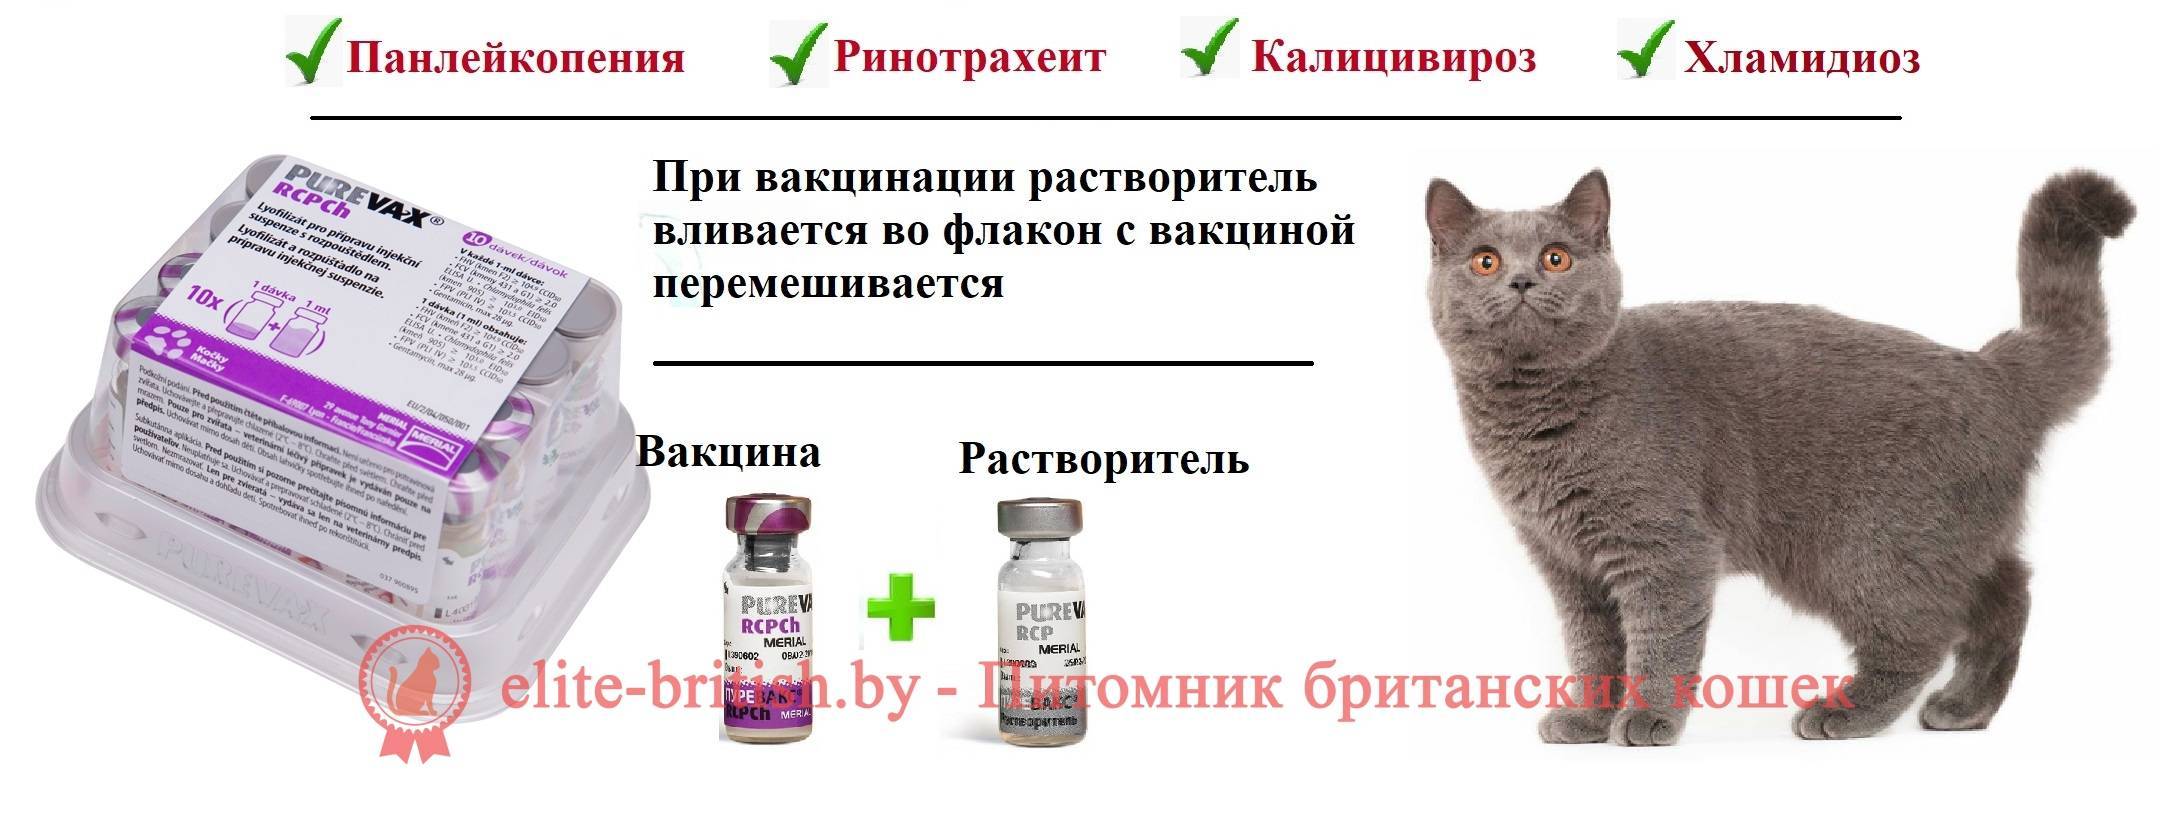 Прививка от токсоплазмоза для кошек - зачем делать?